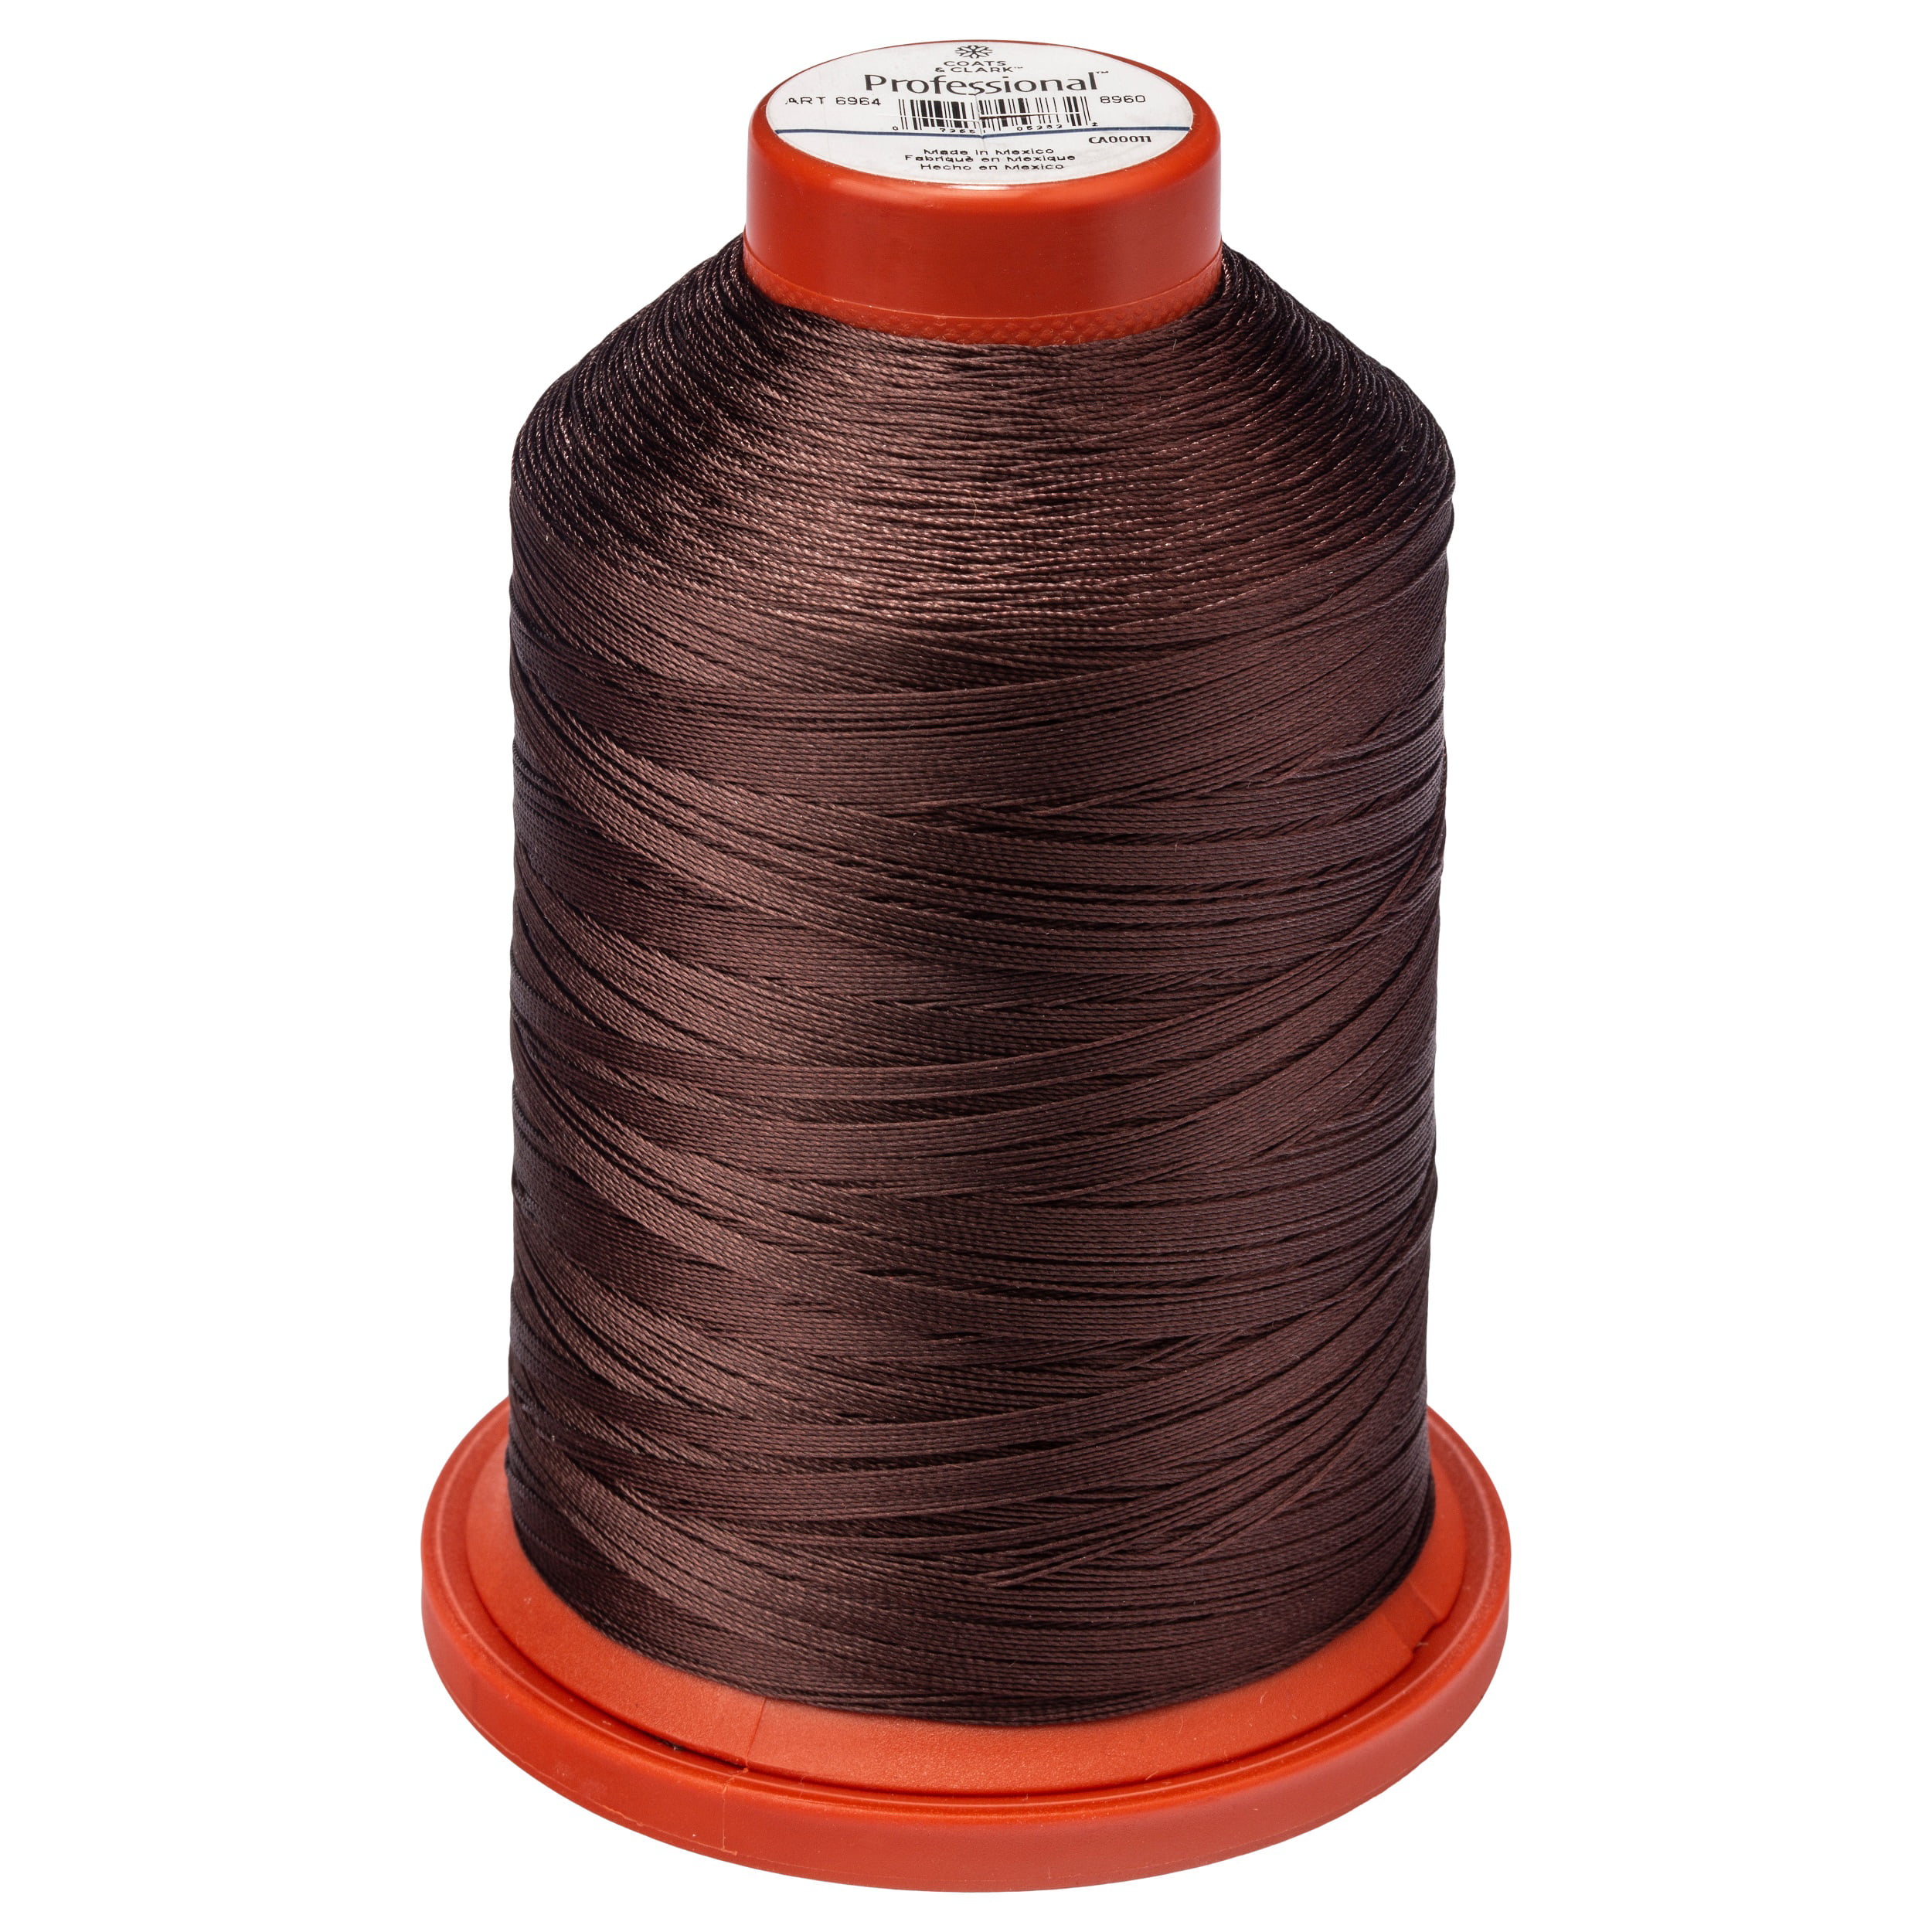 Coats & Clark Upholstery Black Nylon Thread, 150 Yards 